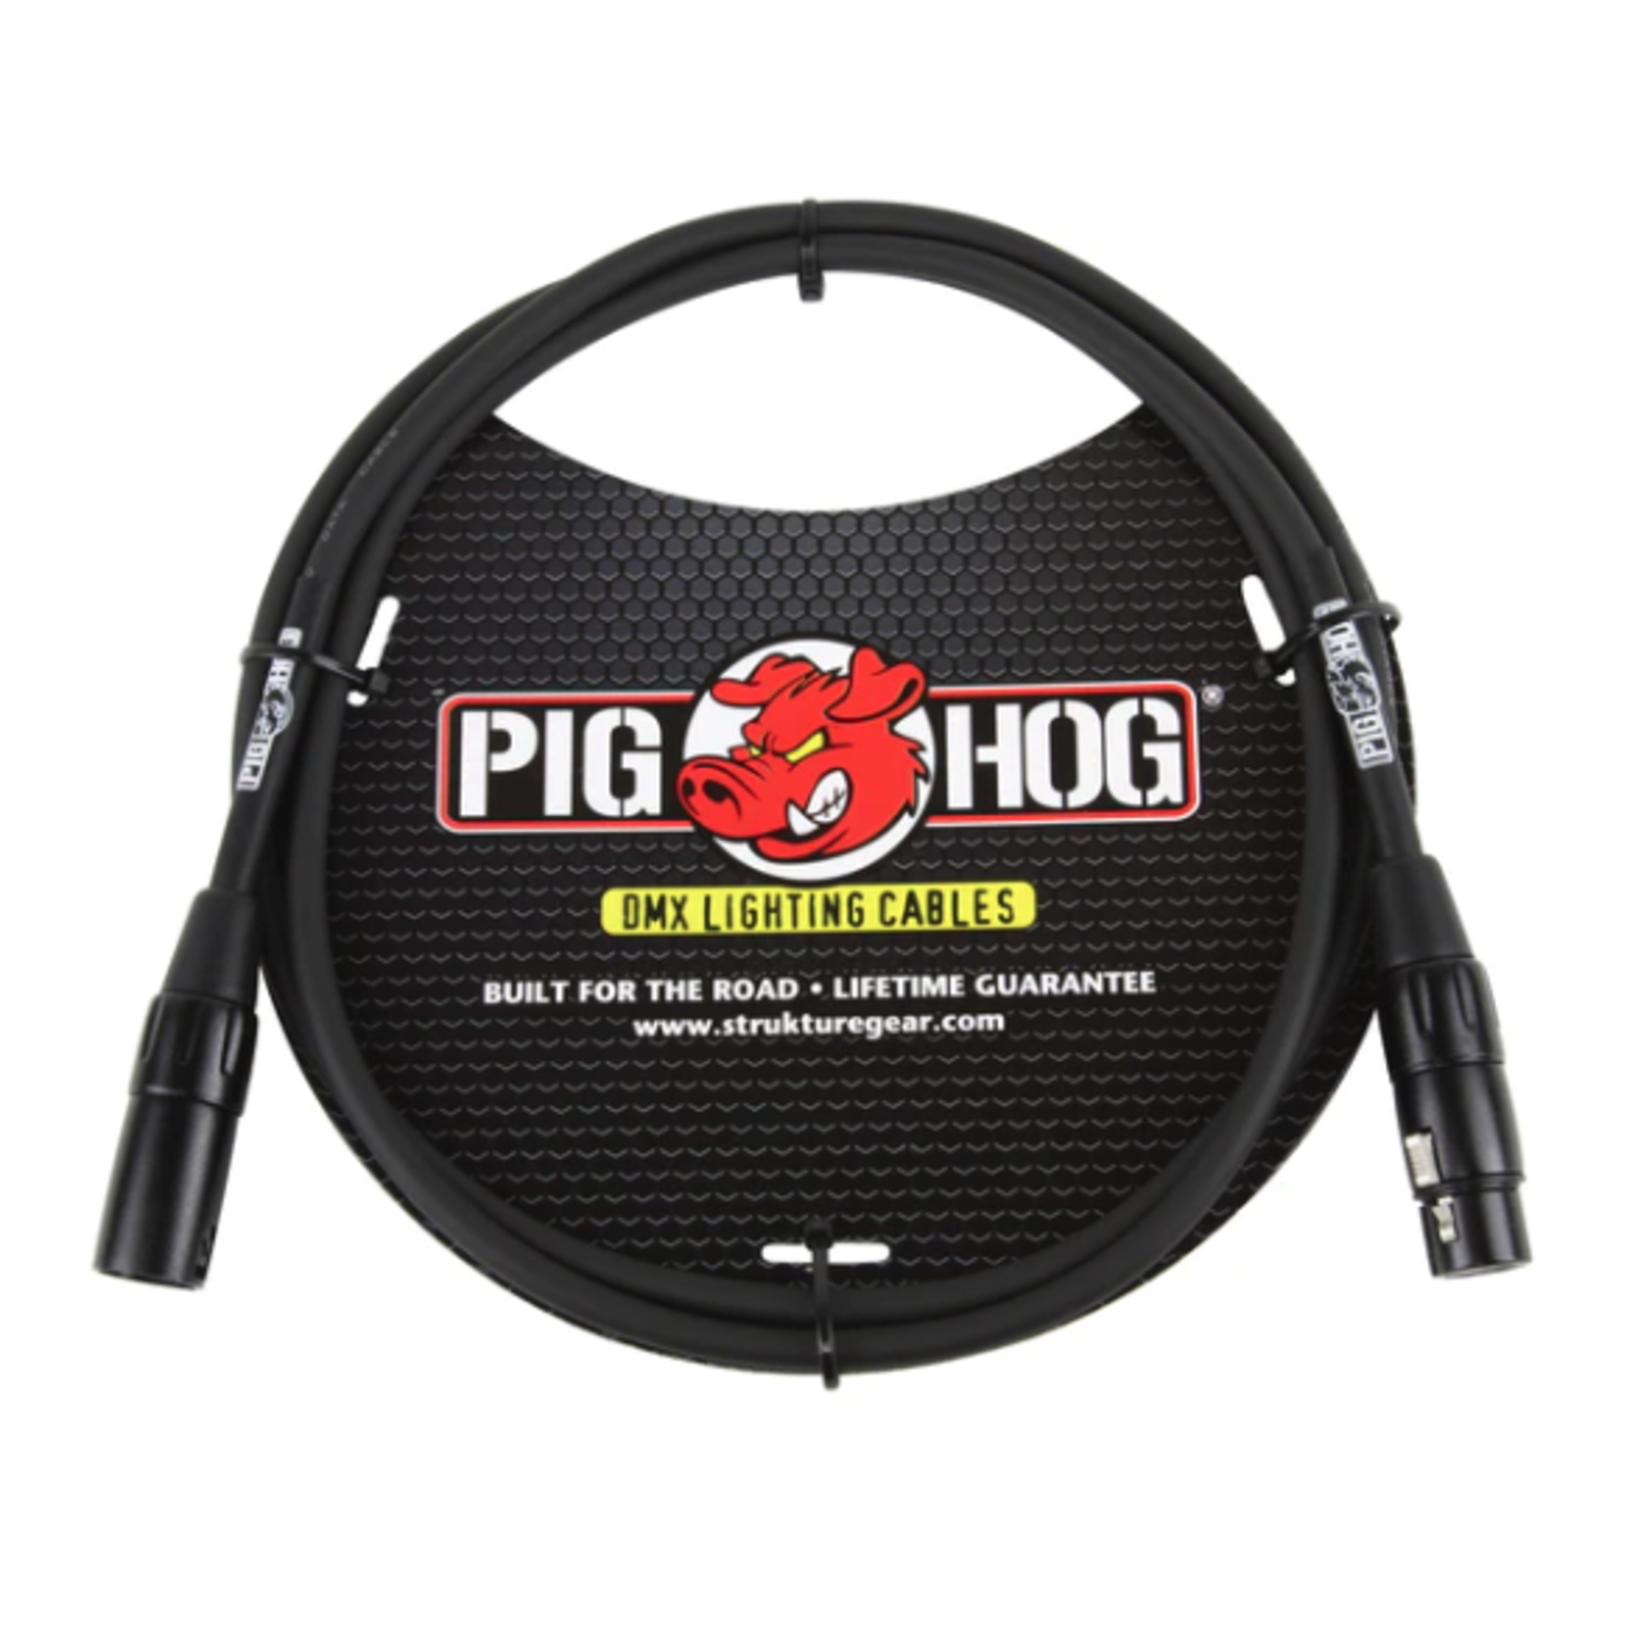 Pig Hog 5 Ft DMX Lighting Cable